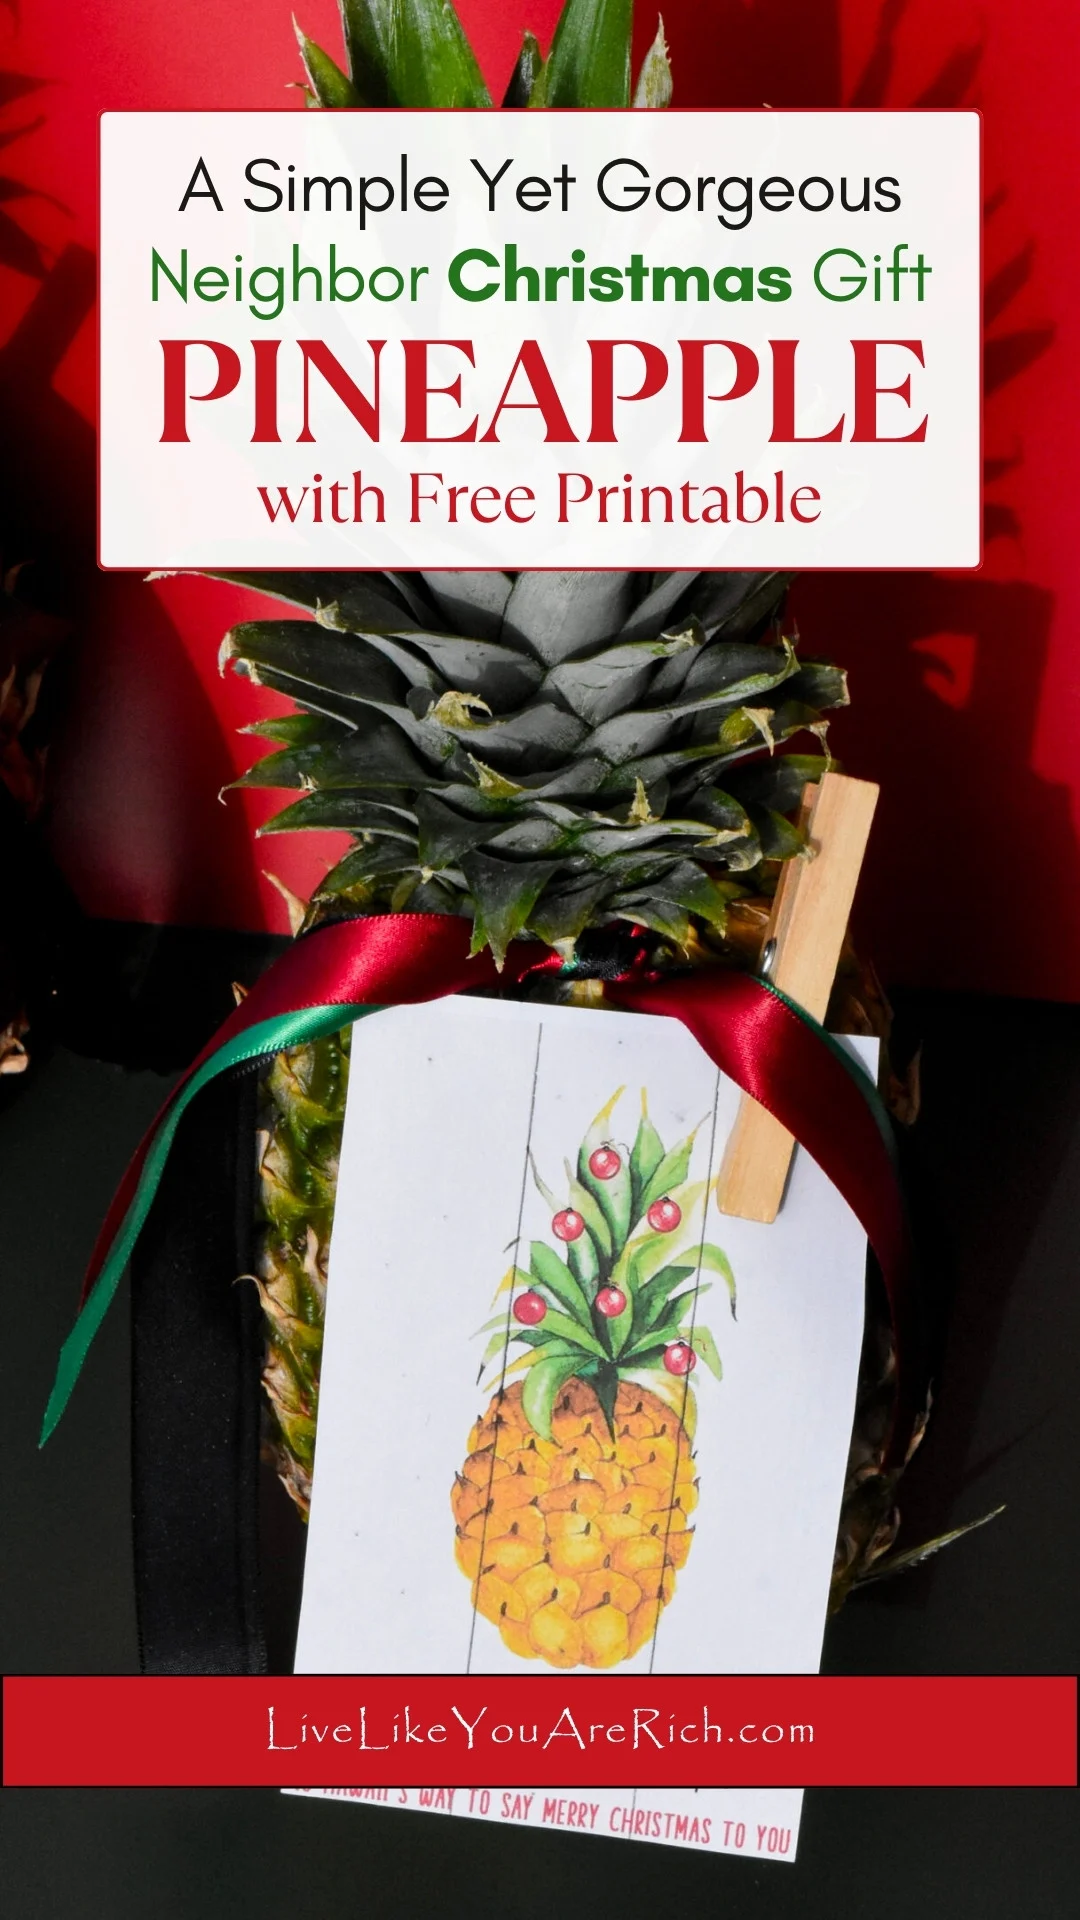 Neighbor Christmas Gift Pineapple with Free Printable